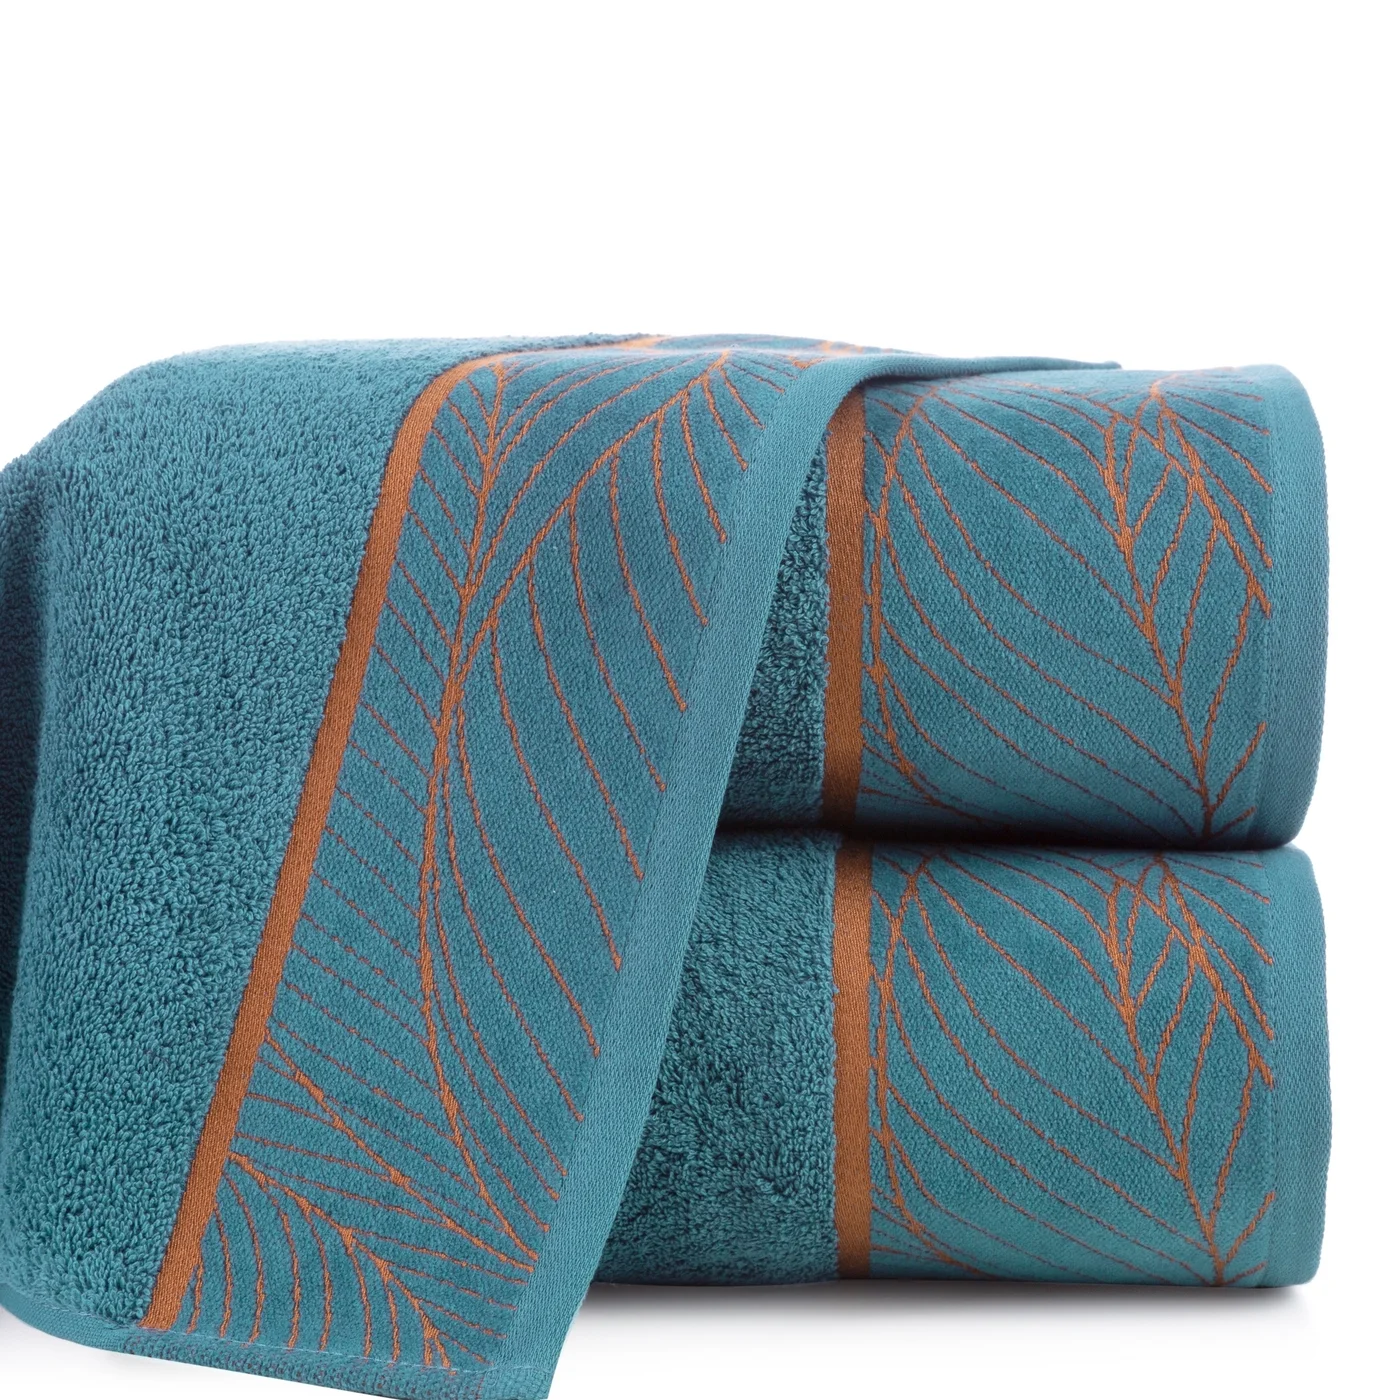 LIMITED COLLECTION ręcznik z miękkiej bawełny LOTOS 4 z welwetową bordiurą z dużym wzorem liści HARMONIA TURKUSU